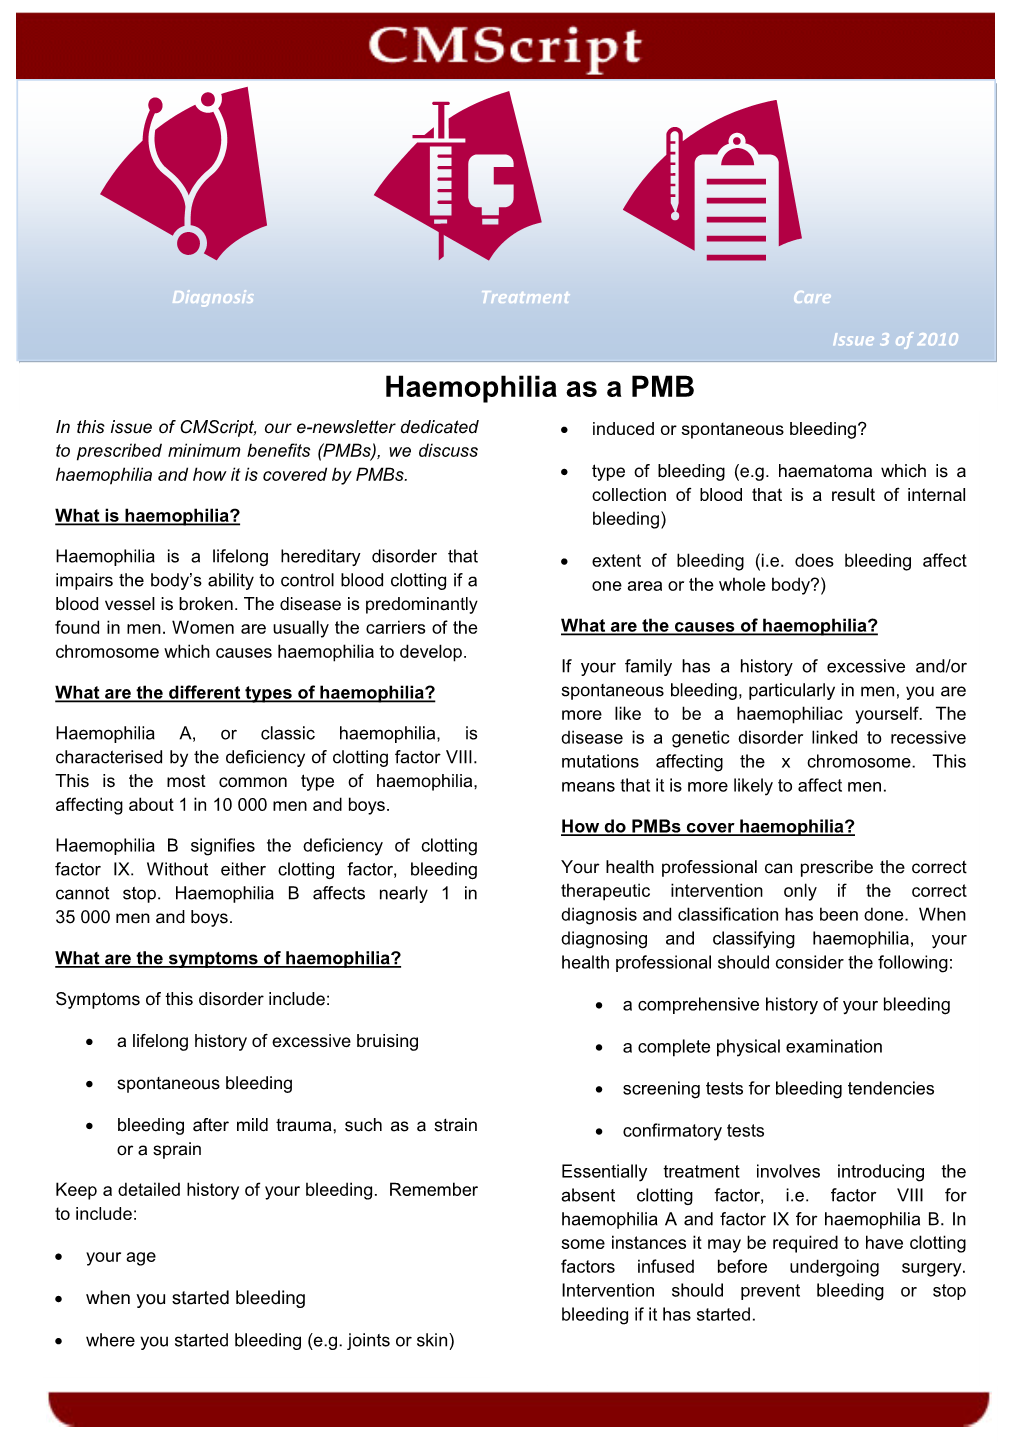 Haemophilia As a PMB